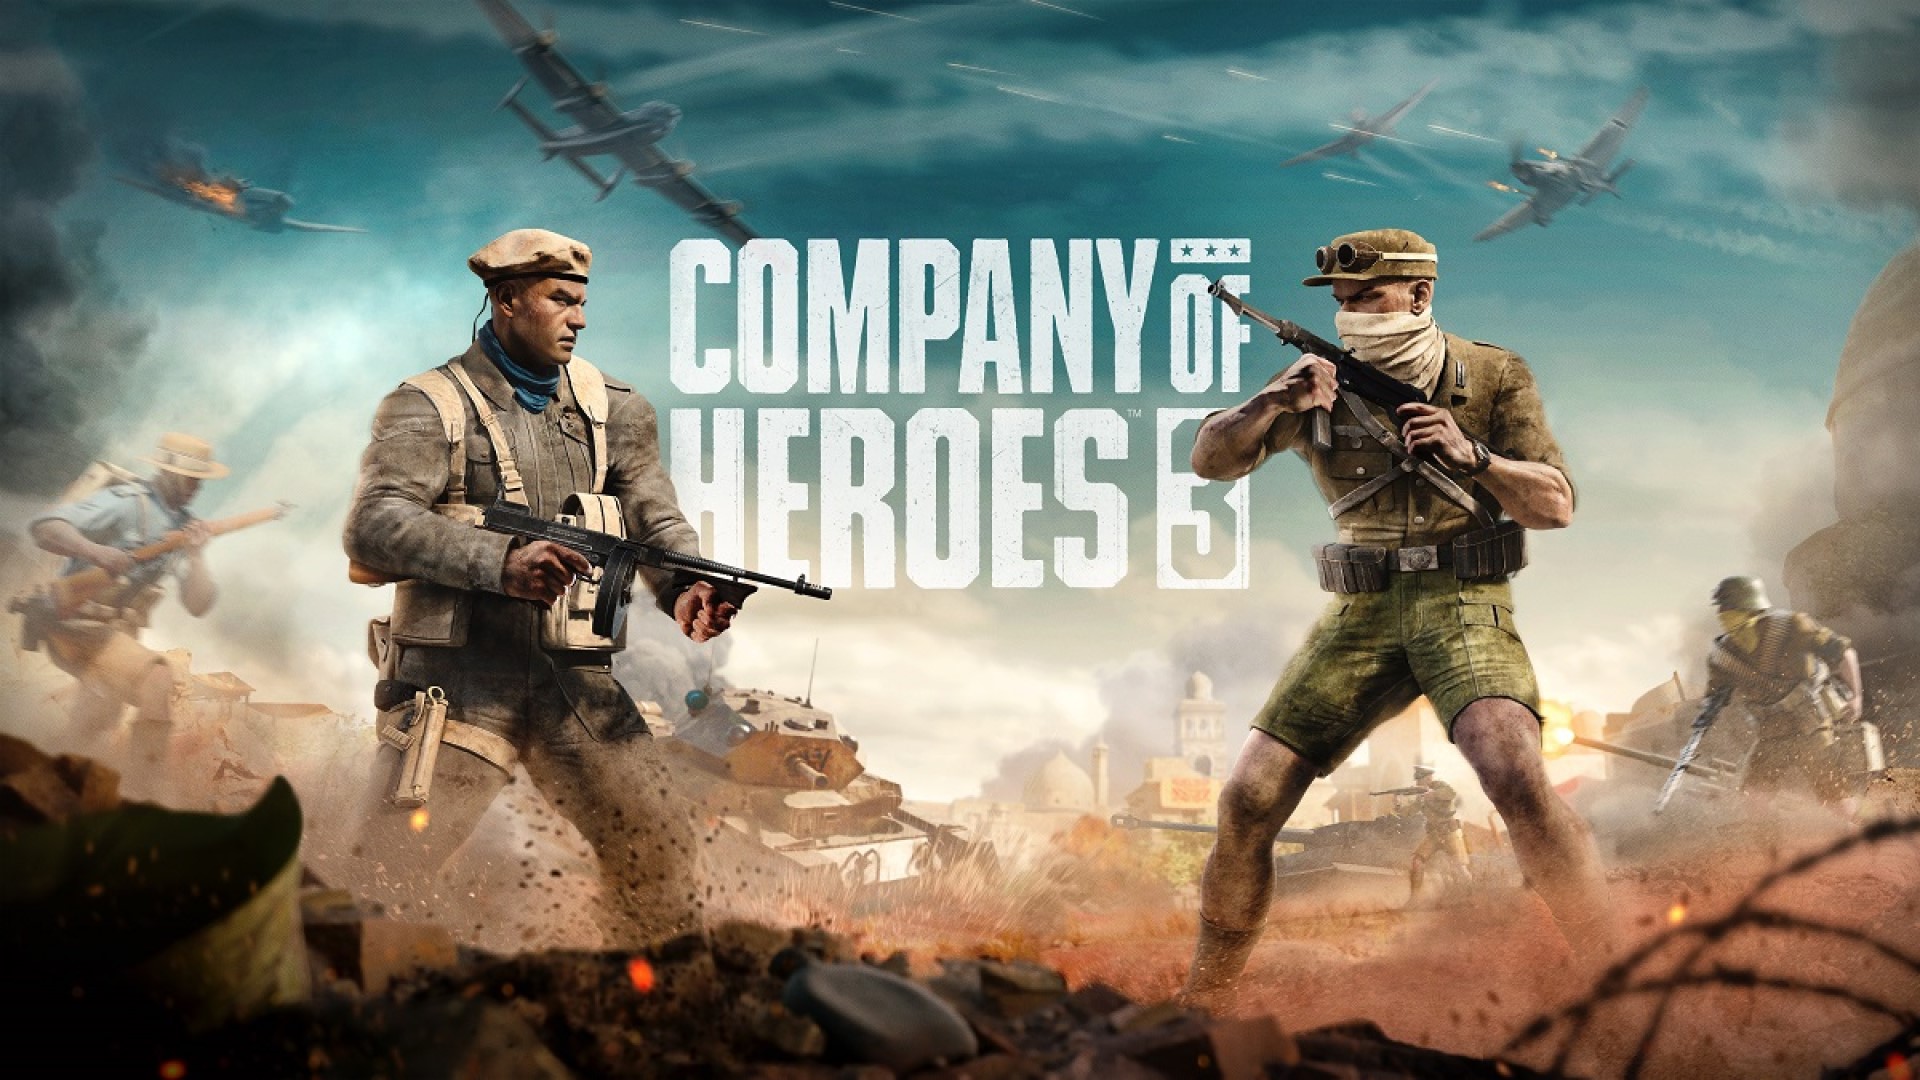 نقشه راه محتوایی Company of Heroes 3 منتشر شد